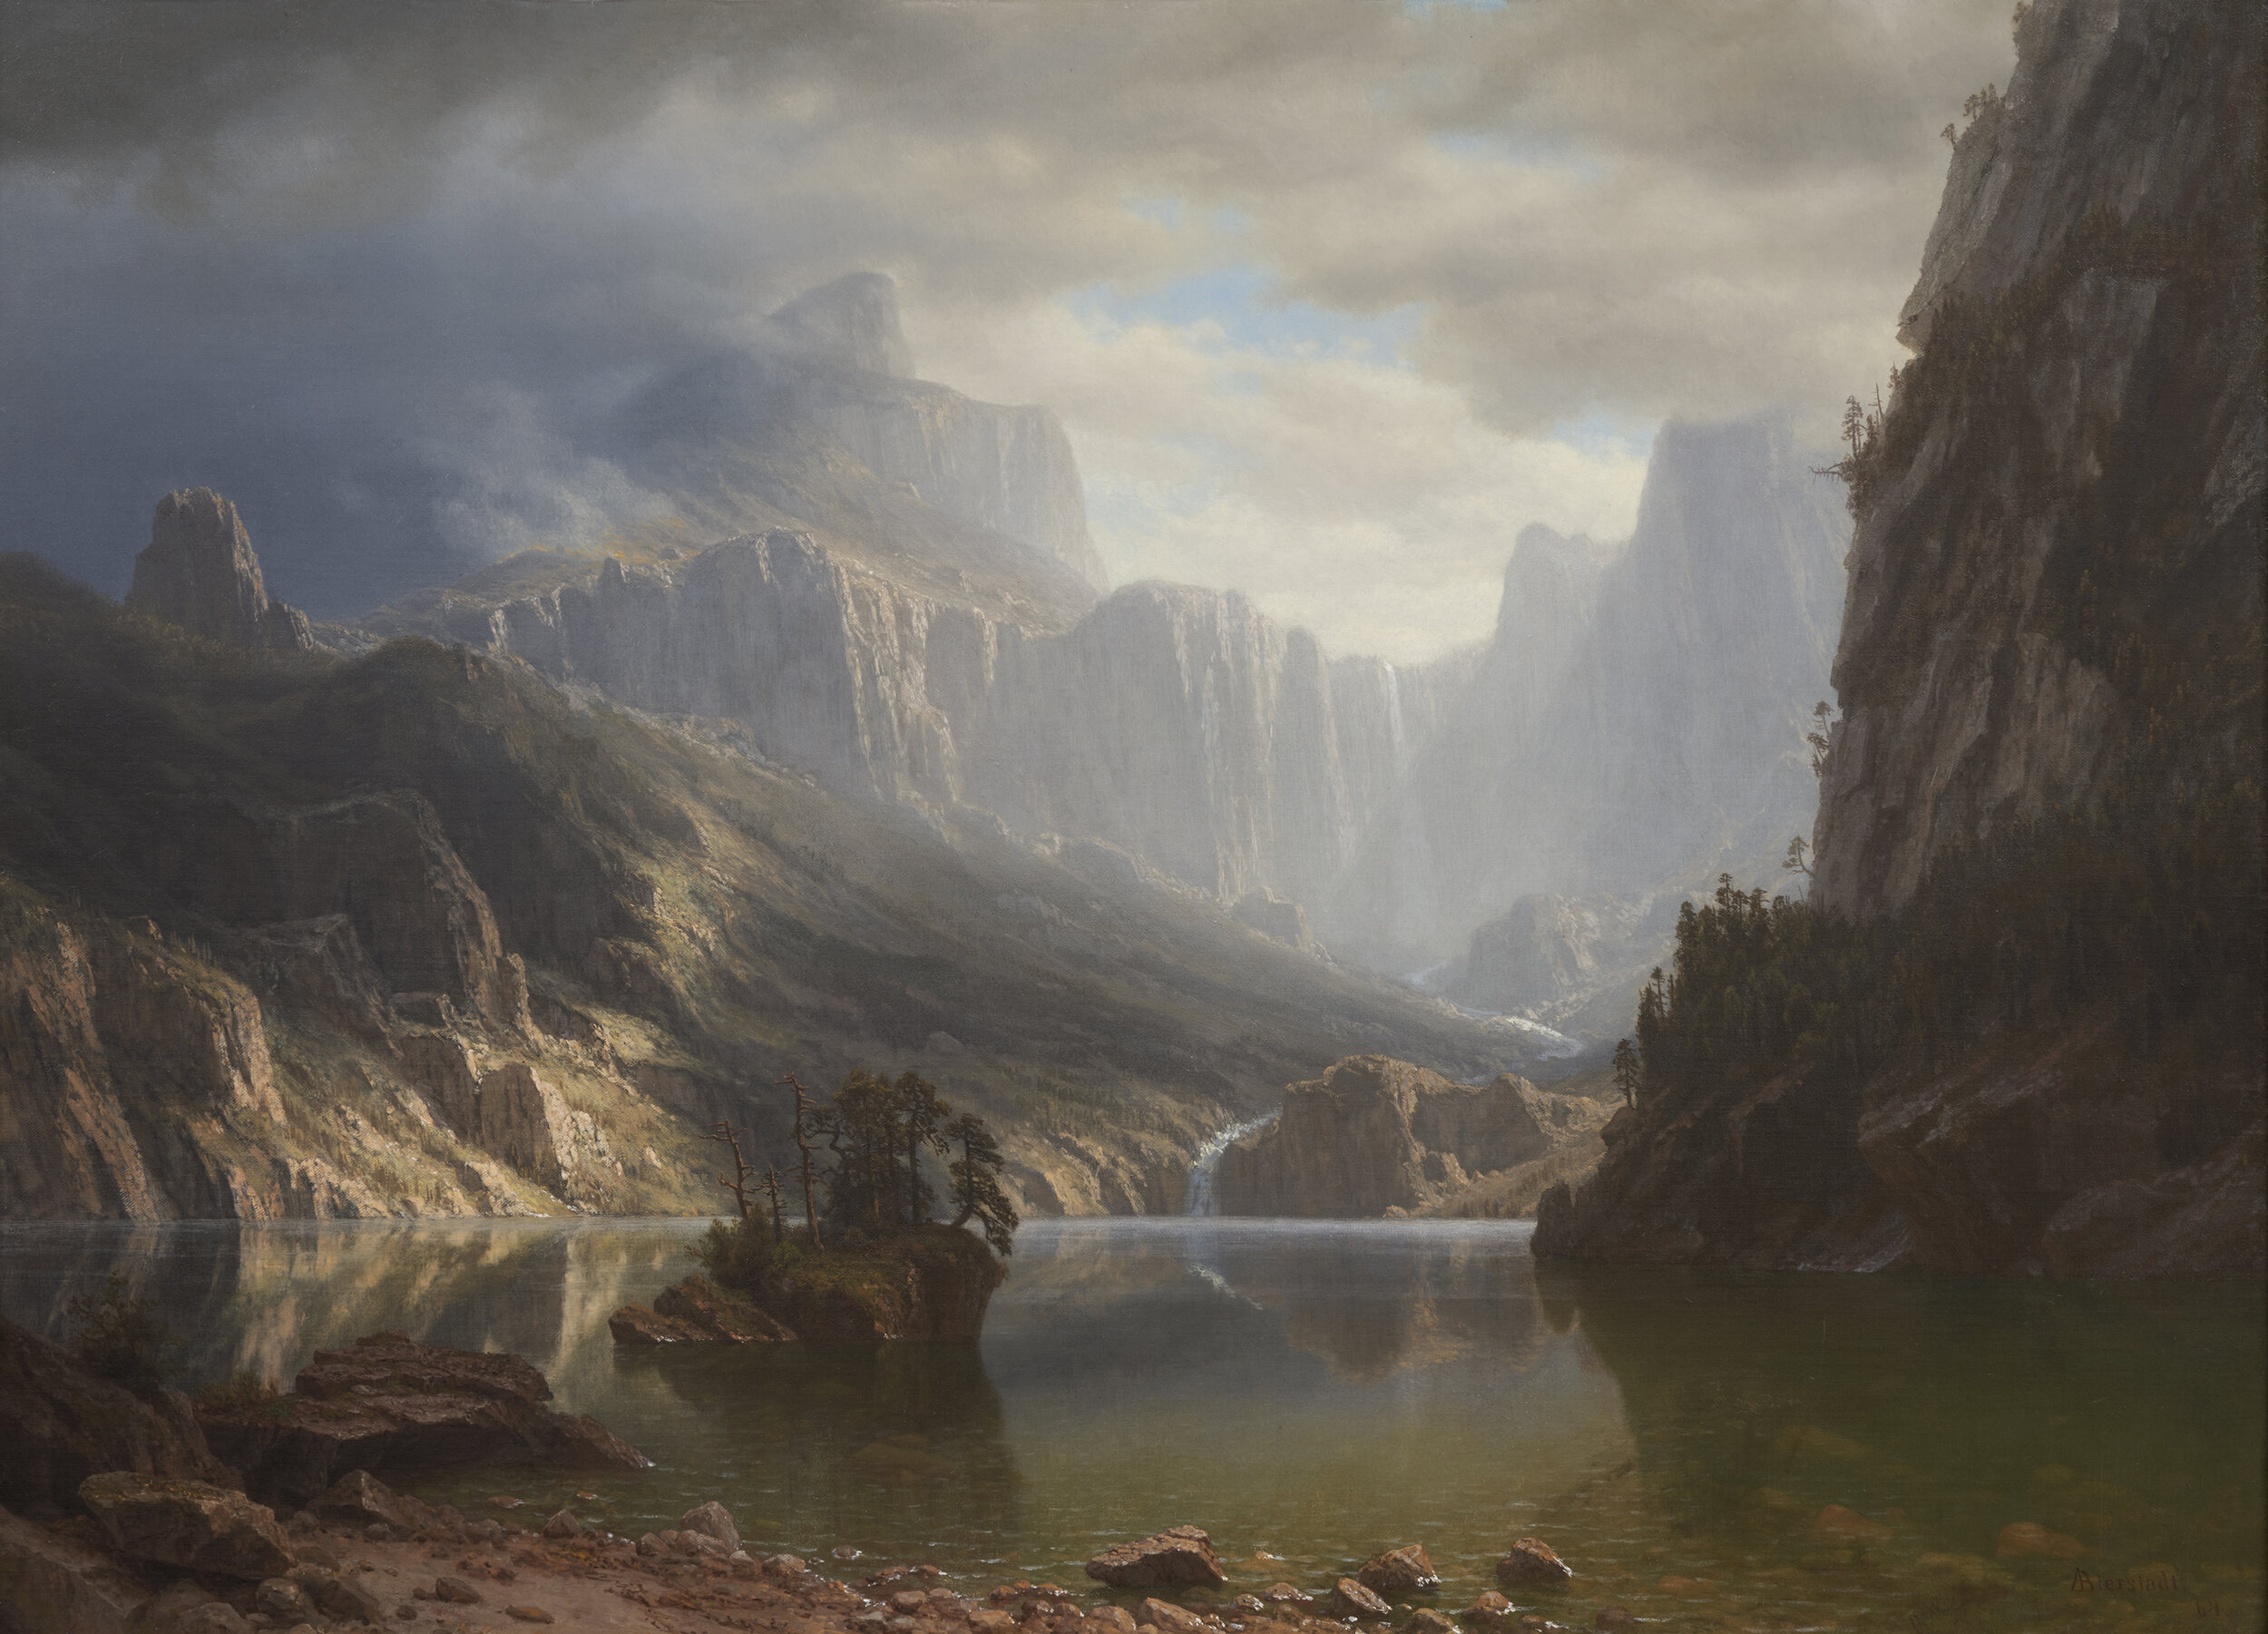  ALBERT BIERSTADT (1830-1902)   Sierra Nevadas (Landscape with Lake),  1864. Oil on canvas. 26 x 36 in. 